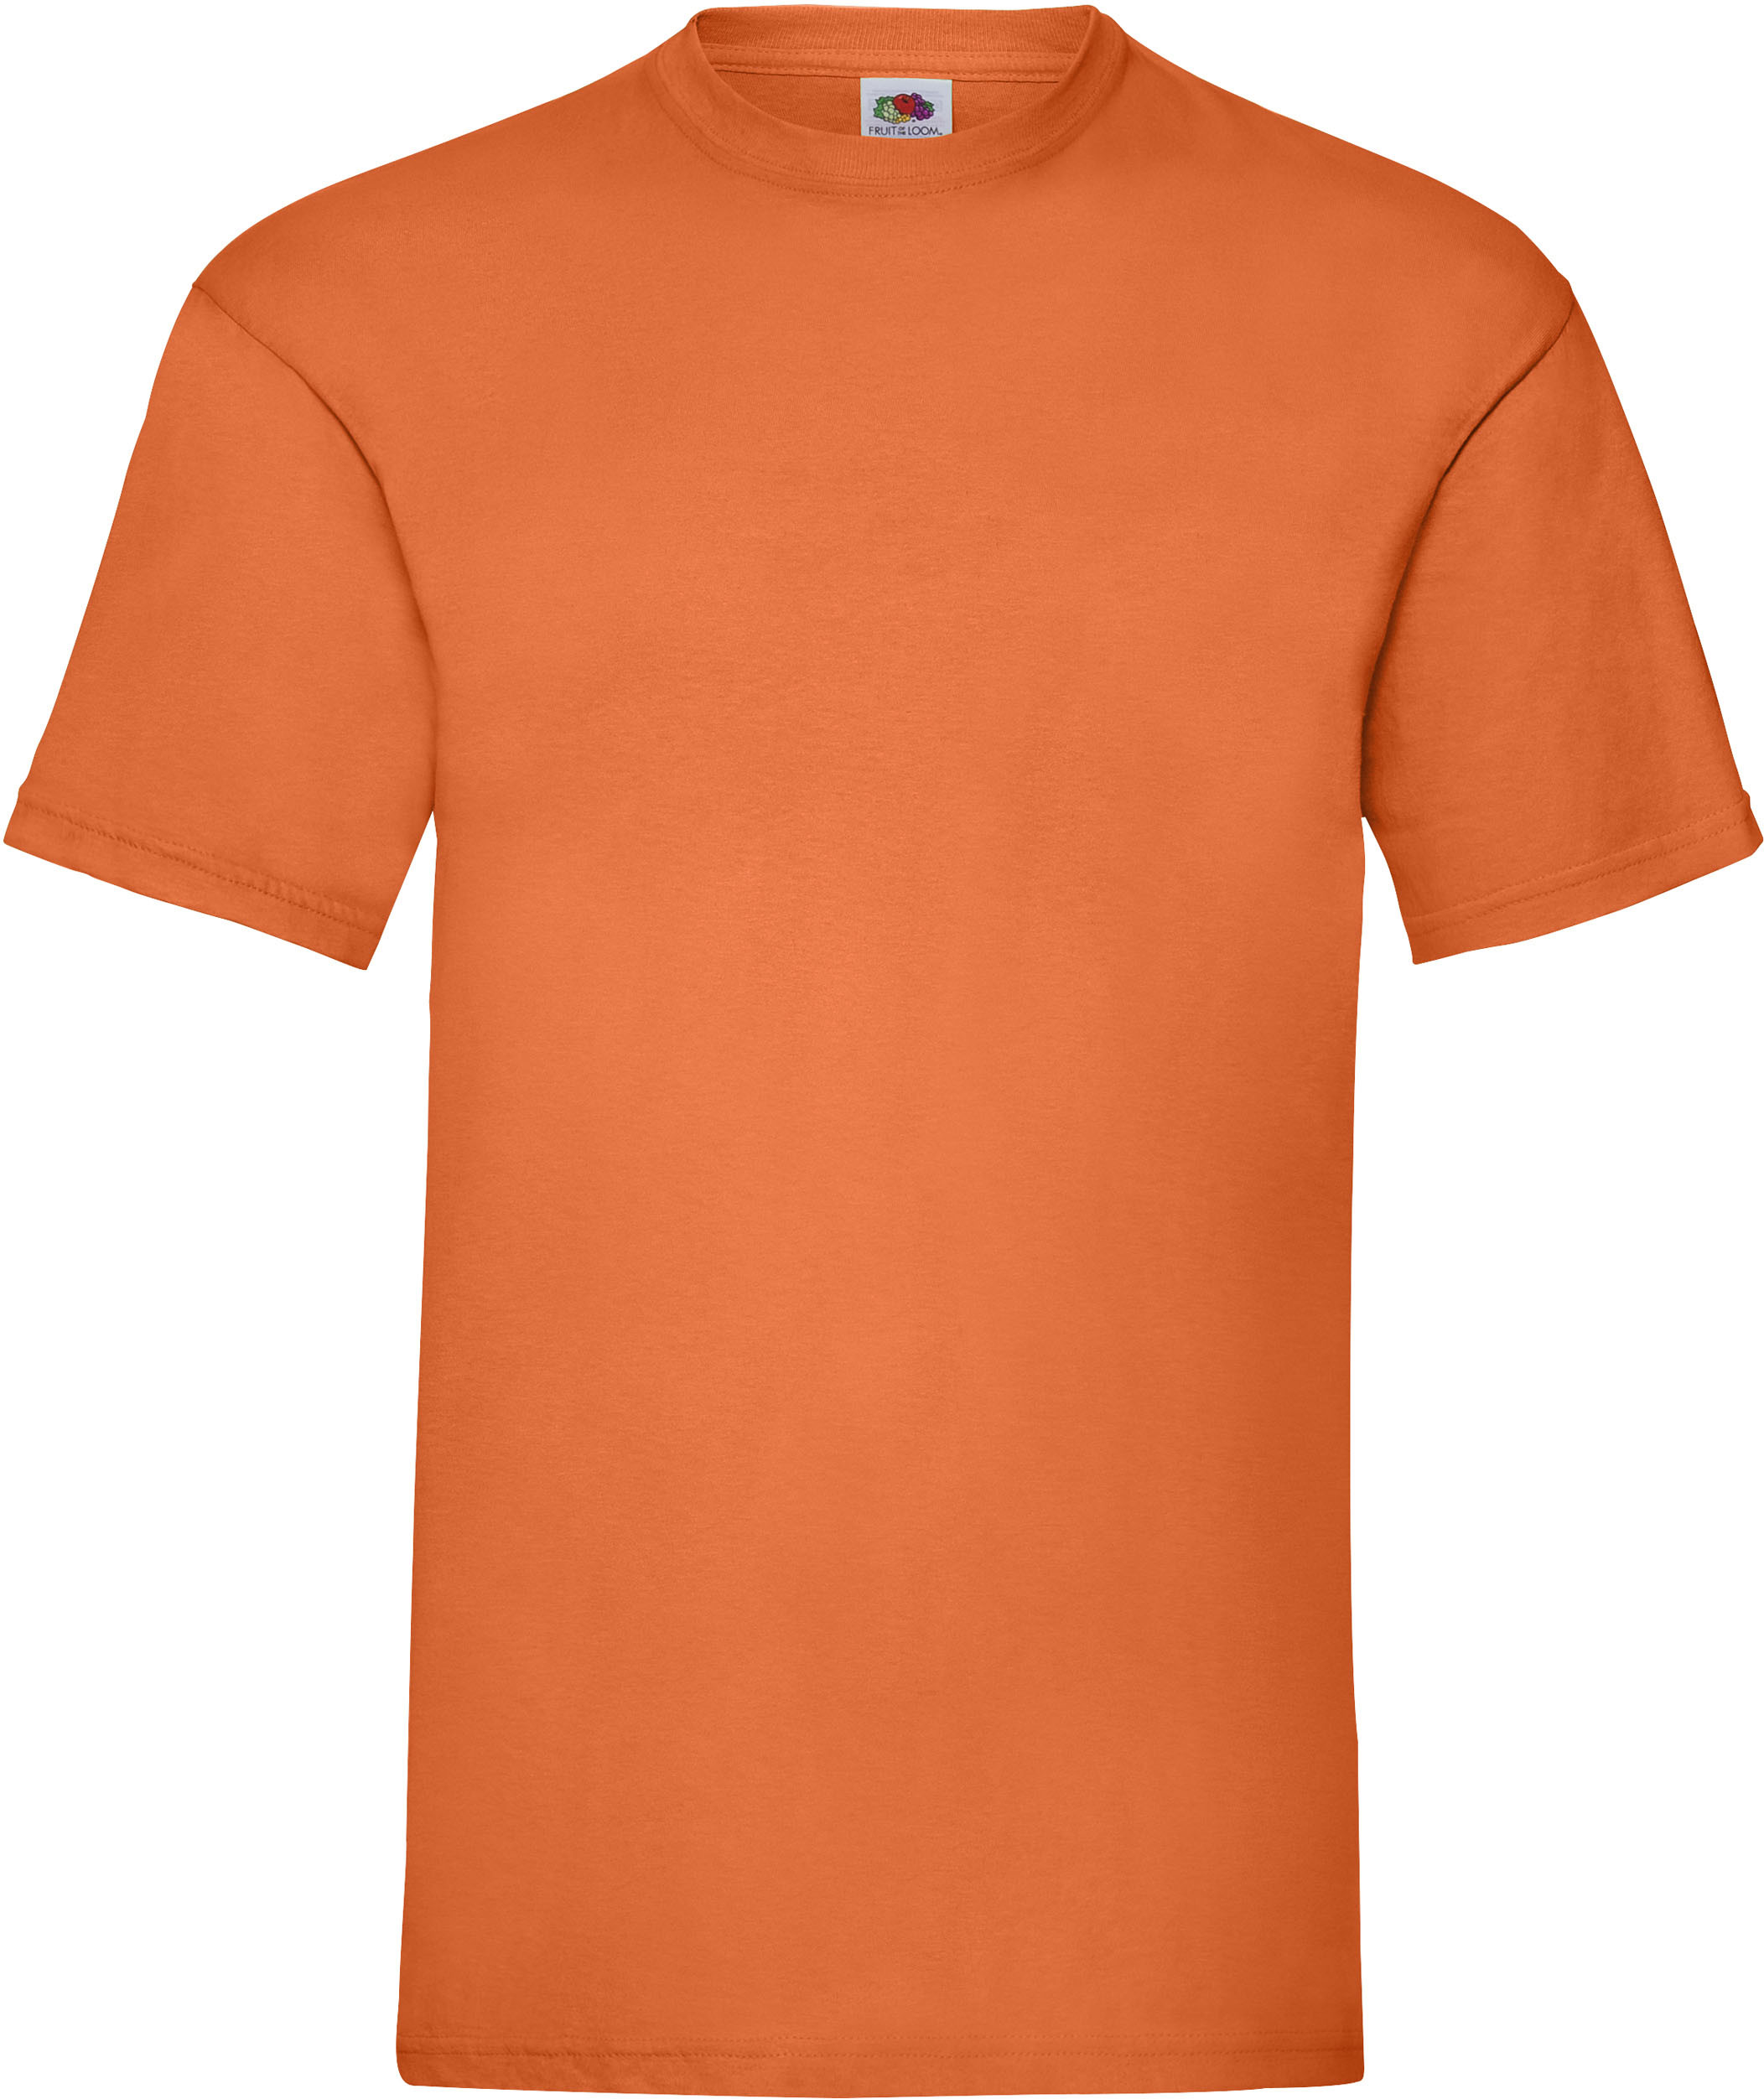 camiseta_personalizada_sc221_naranja